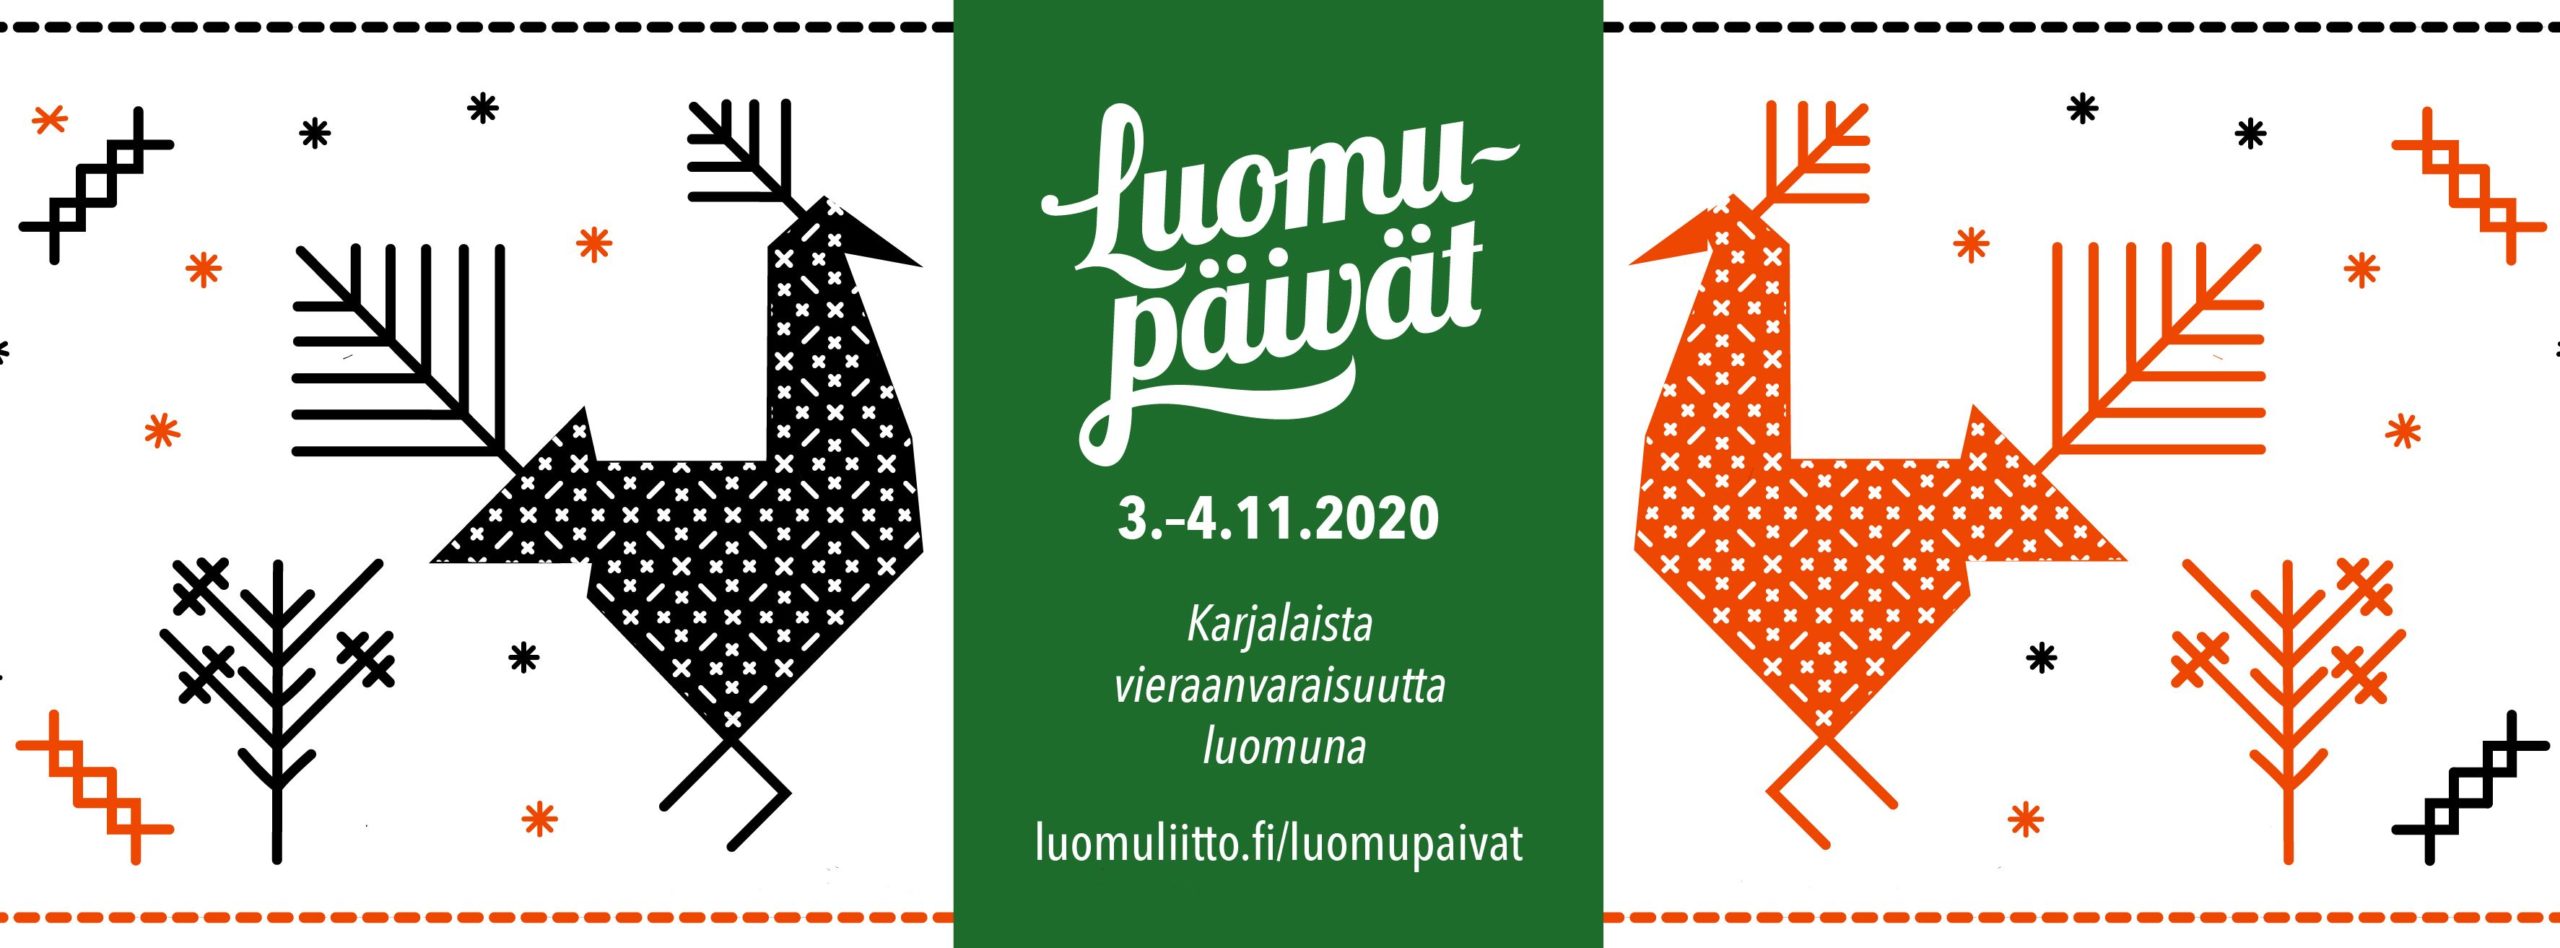 Luomupäivät 2020 -tapahtuman logo ja slogan: "Karjalaista vieraanvaraisuutta luomuna".